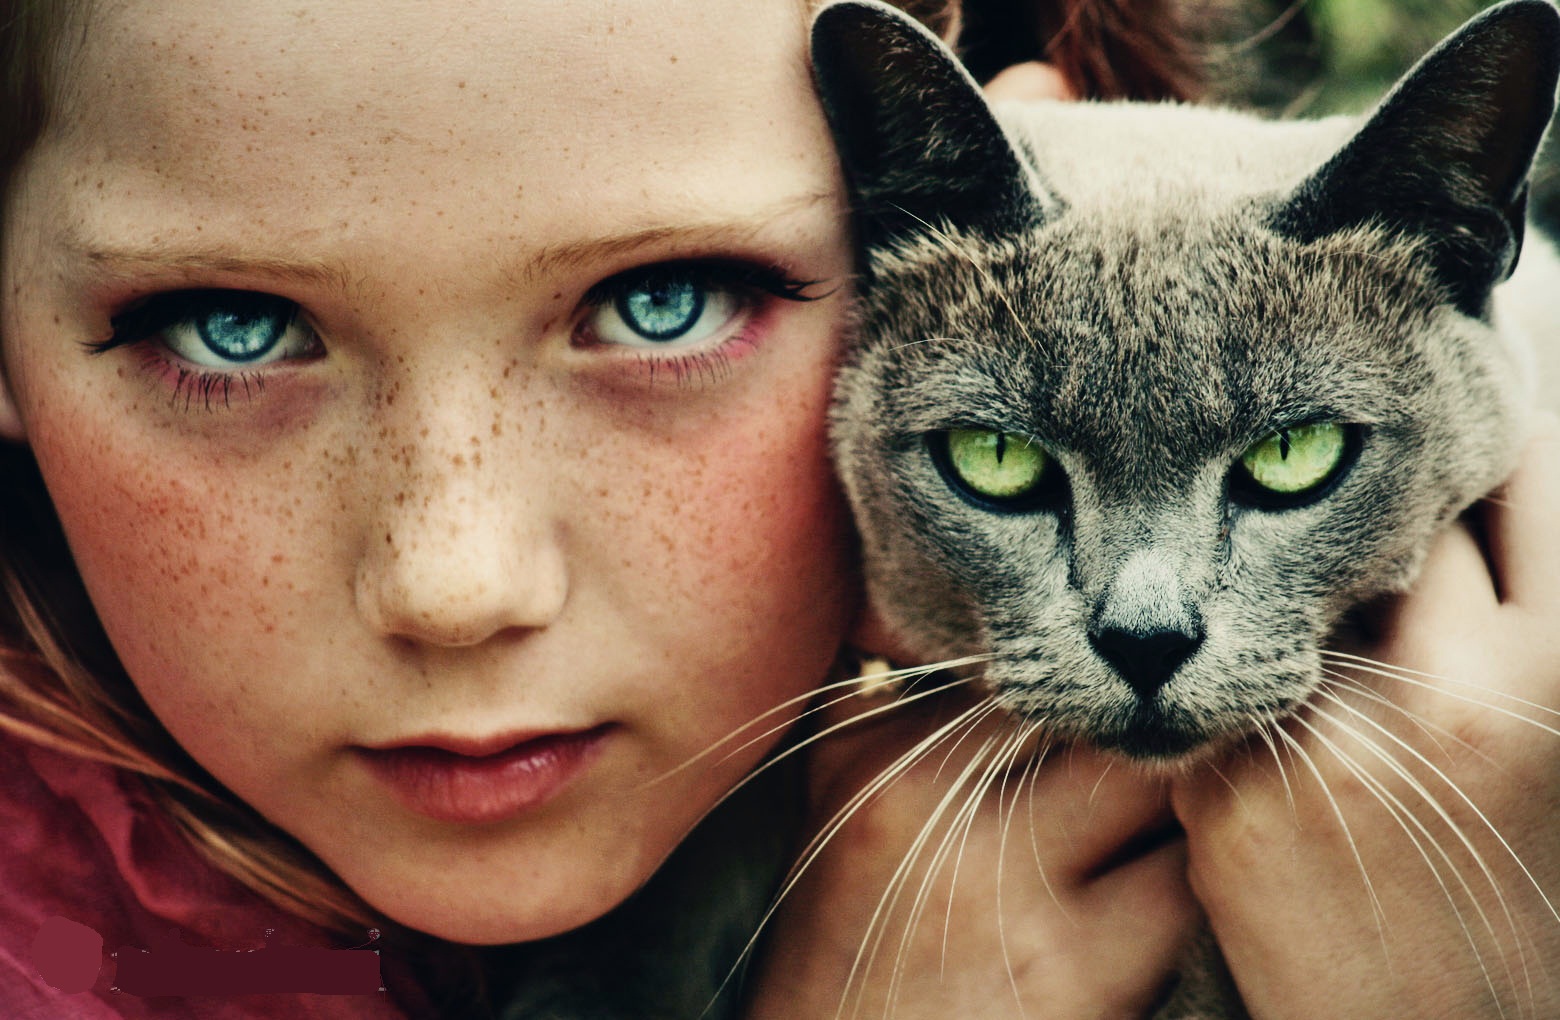 People 1560x1020 portrait eyes children cats friendship animals